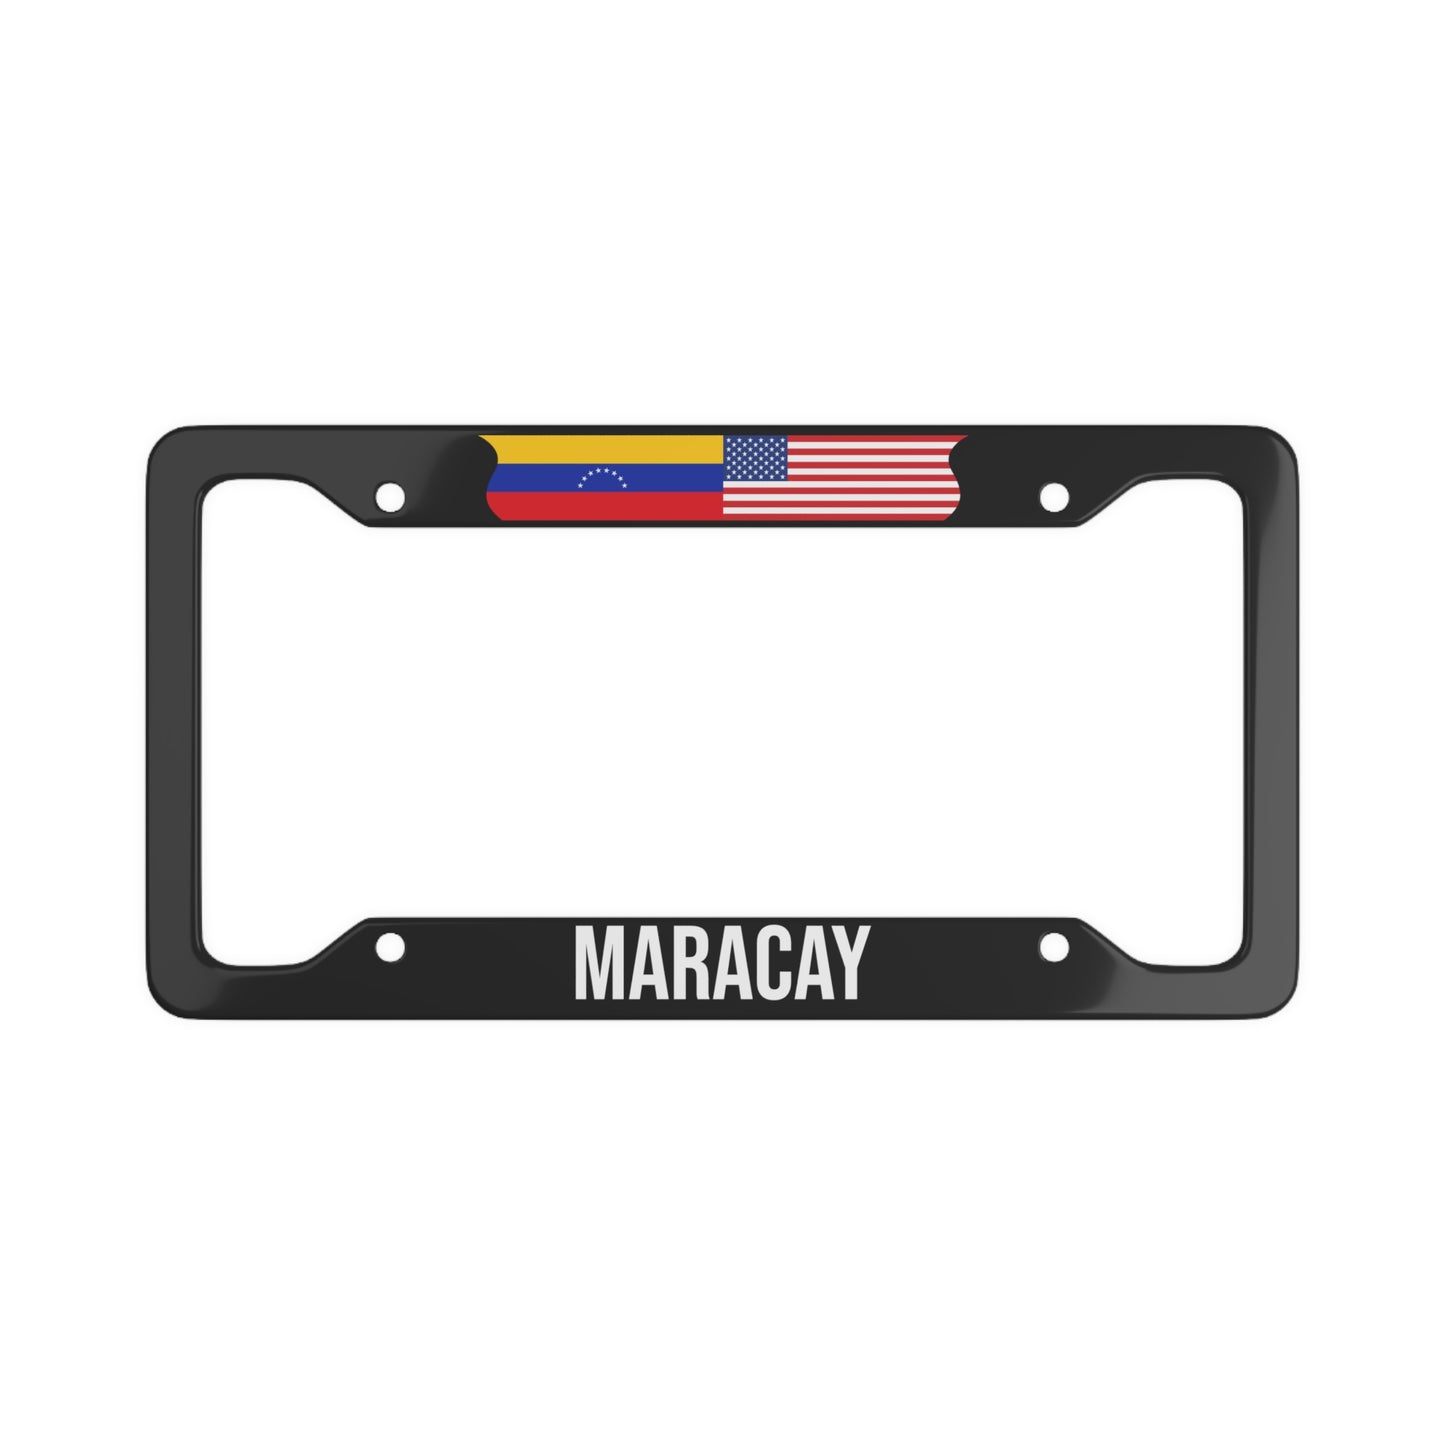 Maracay, Venezuela Car Plate Frame